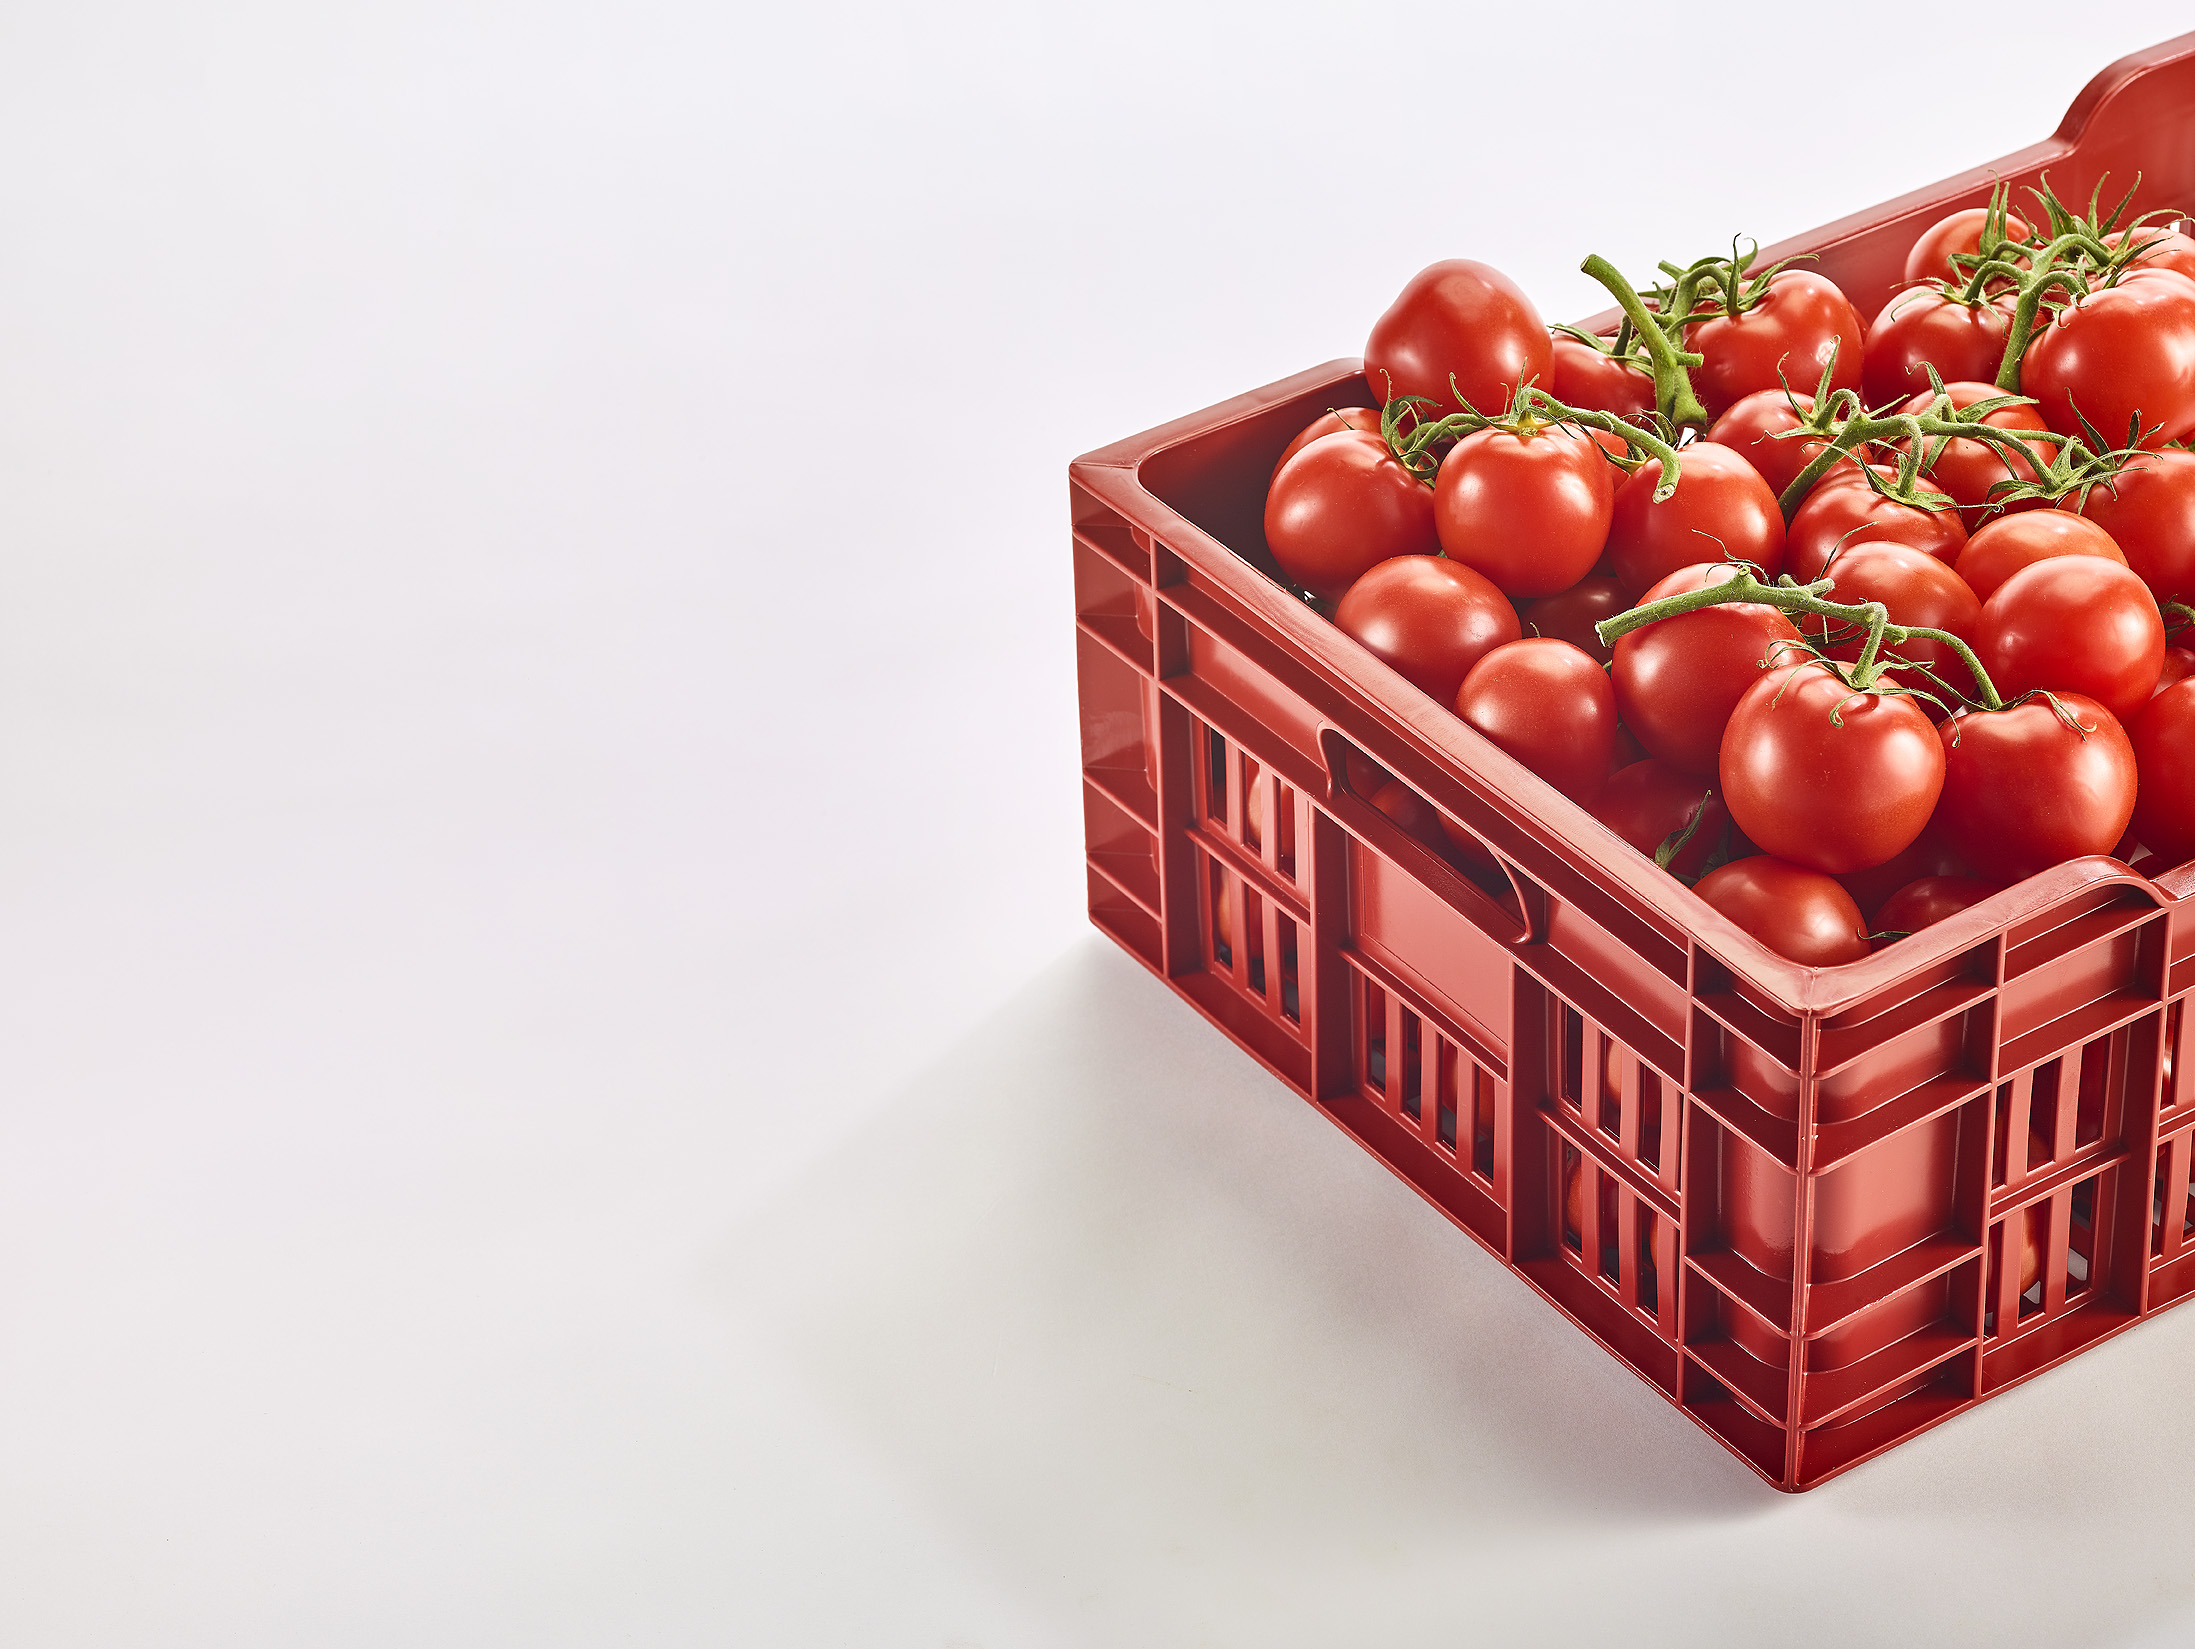 Caisse en copolyester rouge de la marque Gilac contenant des tomates.